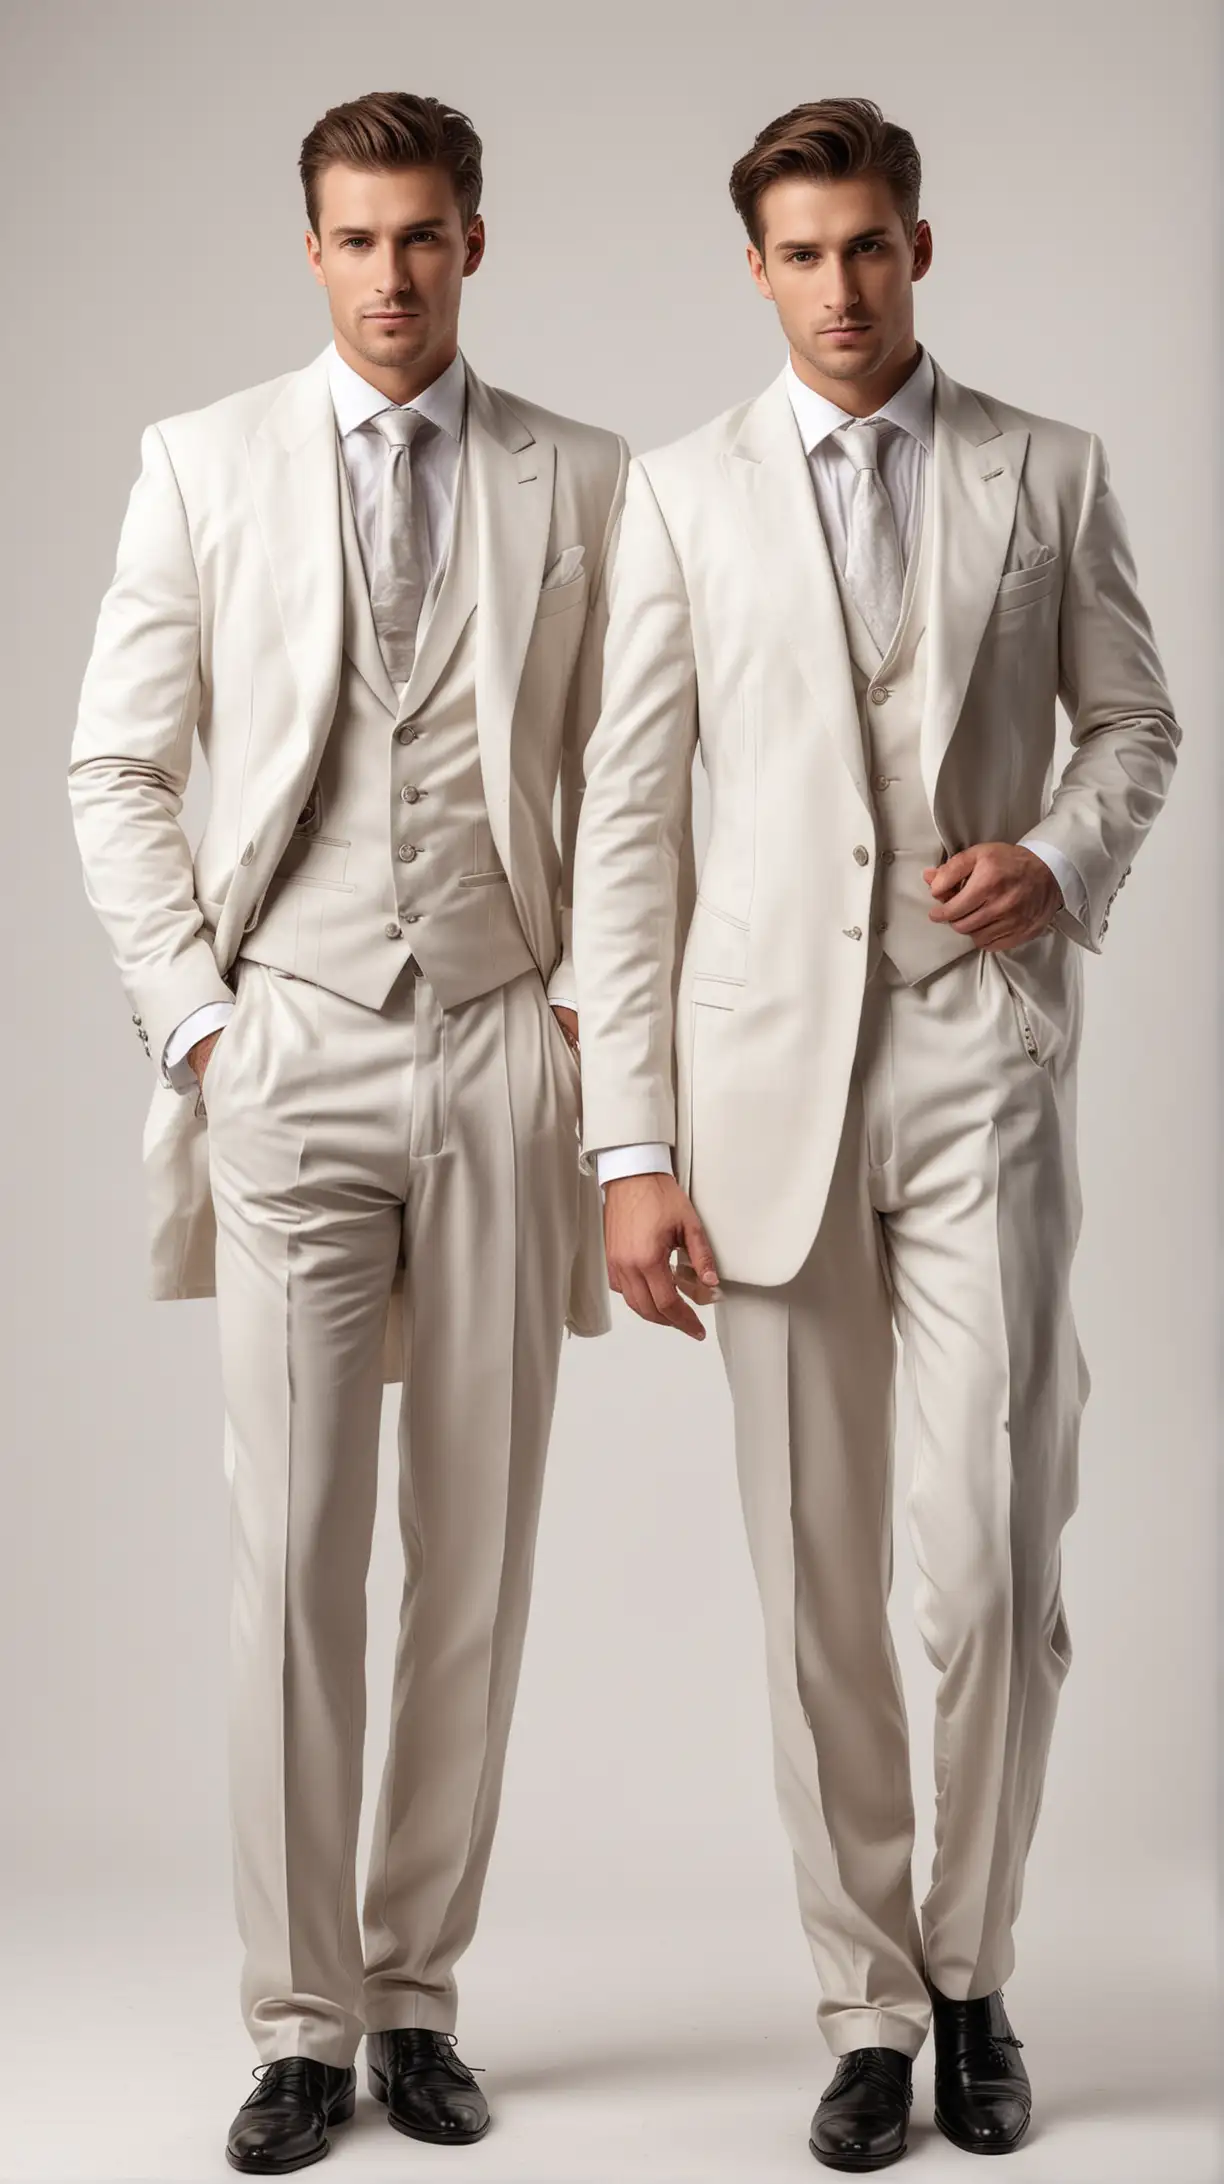 Two Handsome Gentlemen in Elegant Evening Suits Undressing